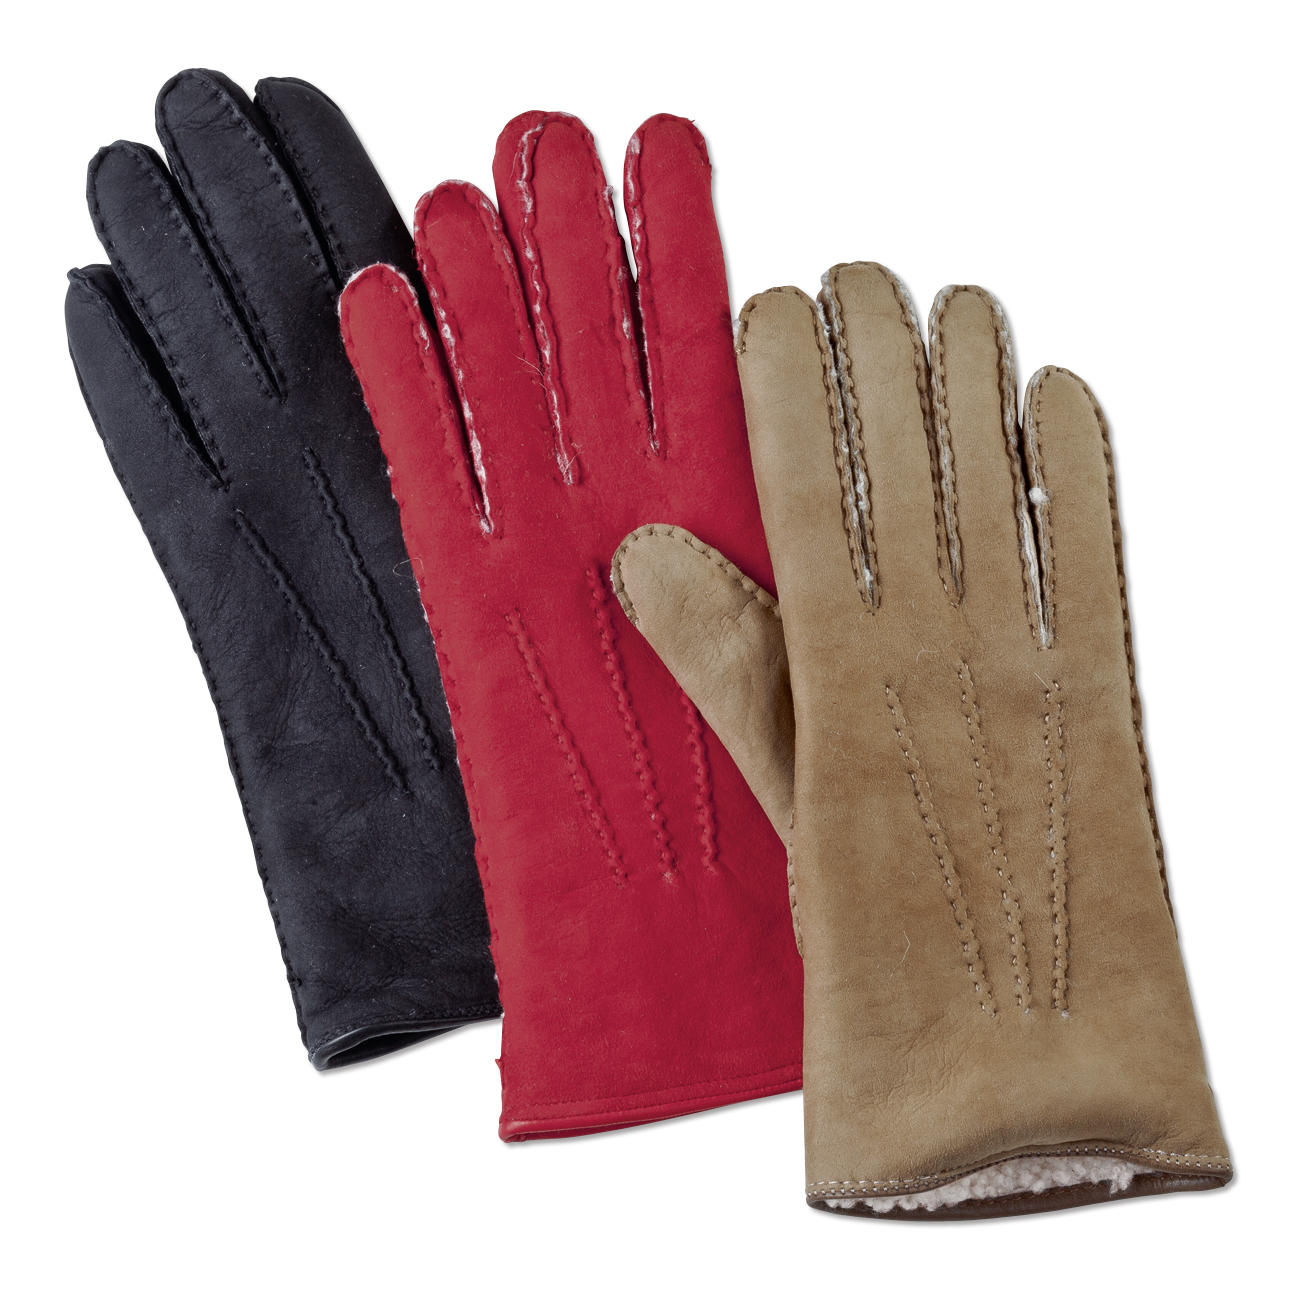 Buy Merola Curly Lambskin Gloves for women online